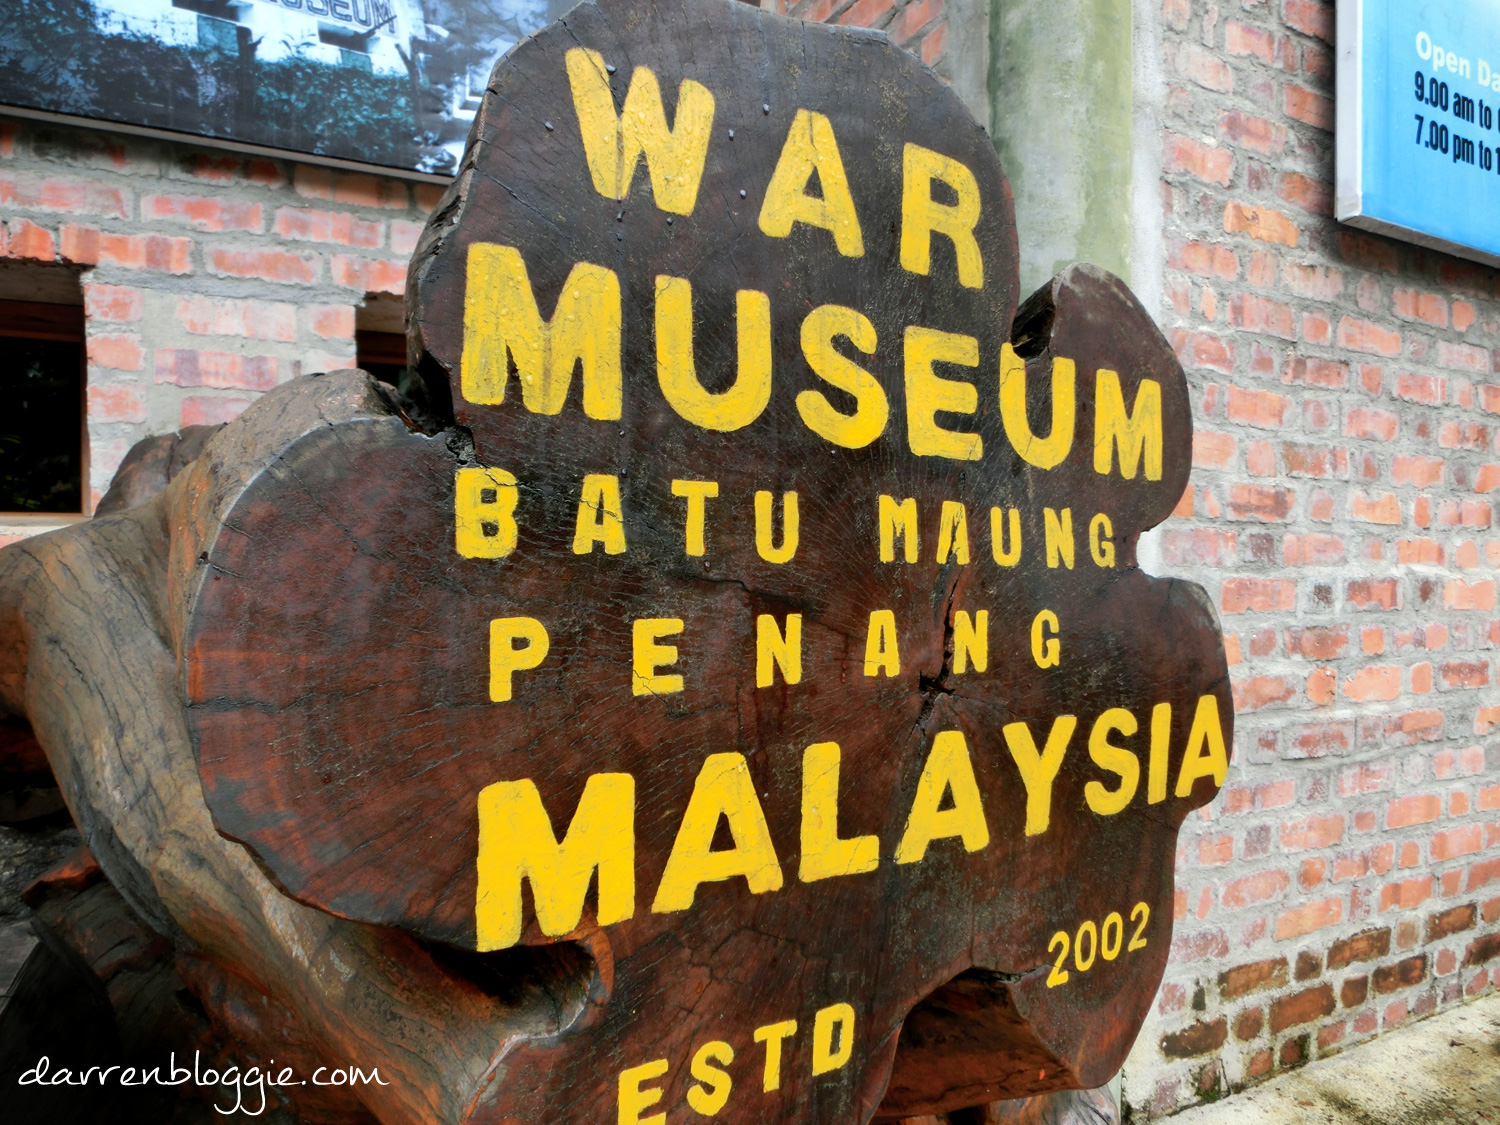 3D2N in Penang : Half Day Tour in Penang to Temples, War Museum & Penang Hill darrenbloggie